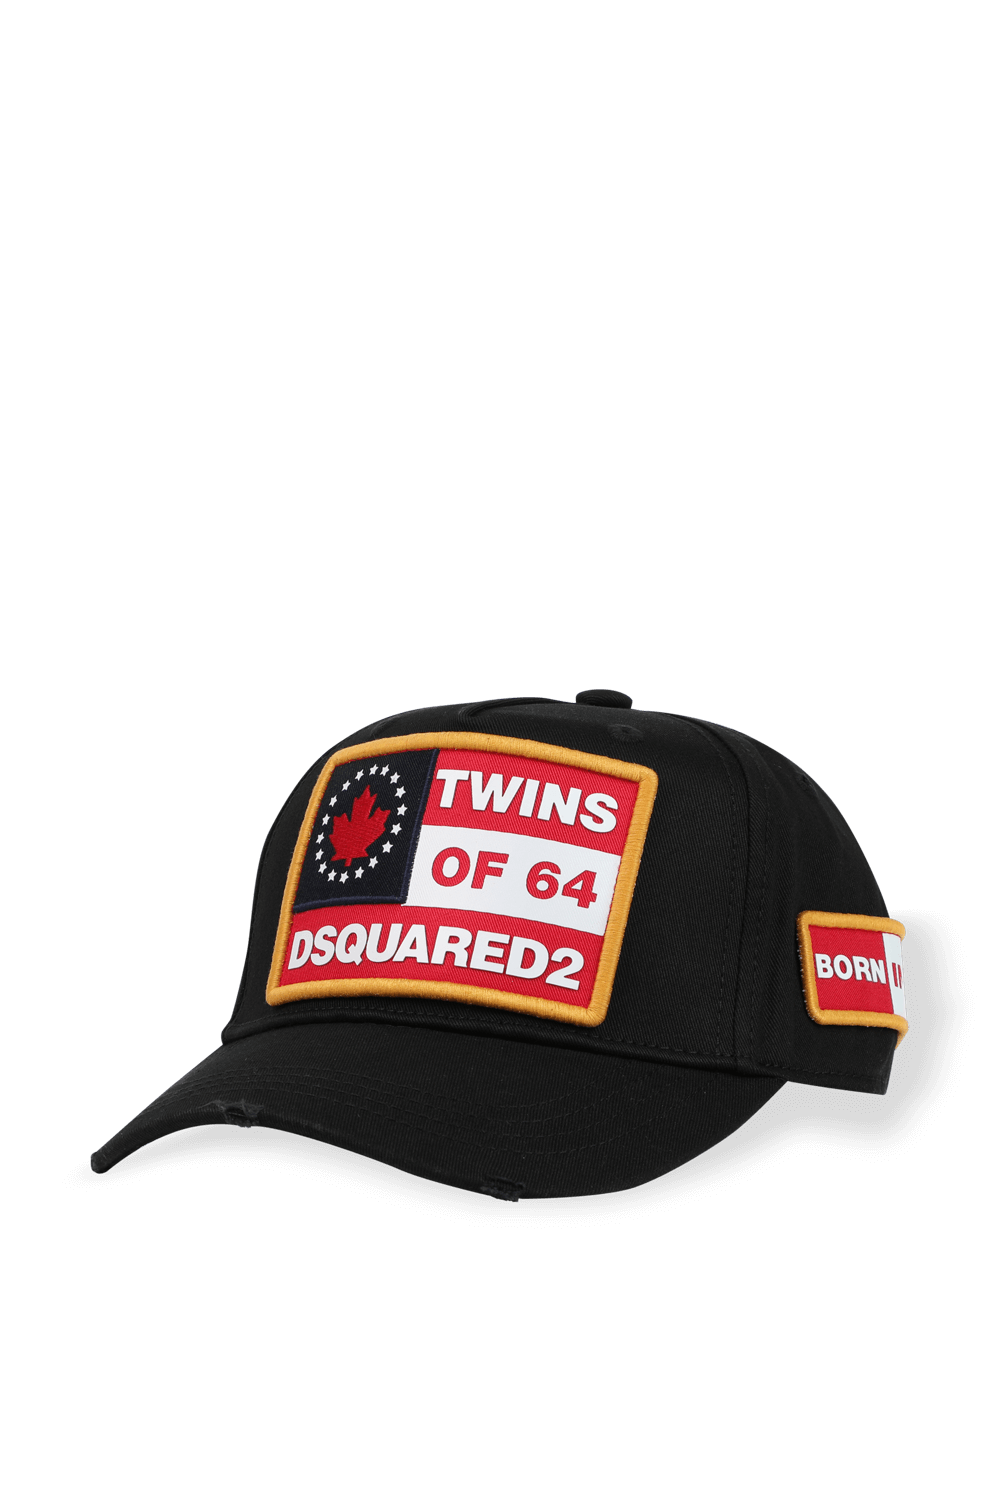 כובע בייסבול טווינס אוף 64 DSQUARED2